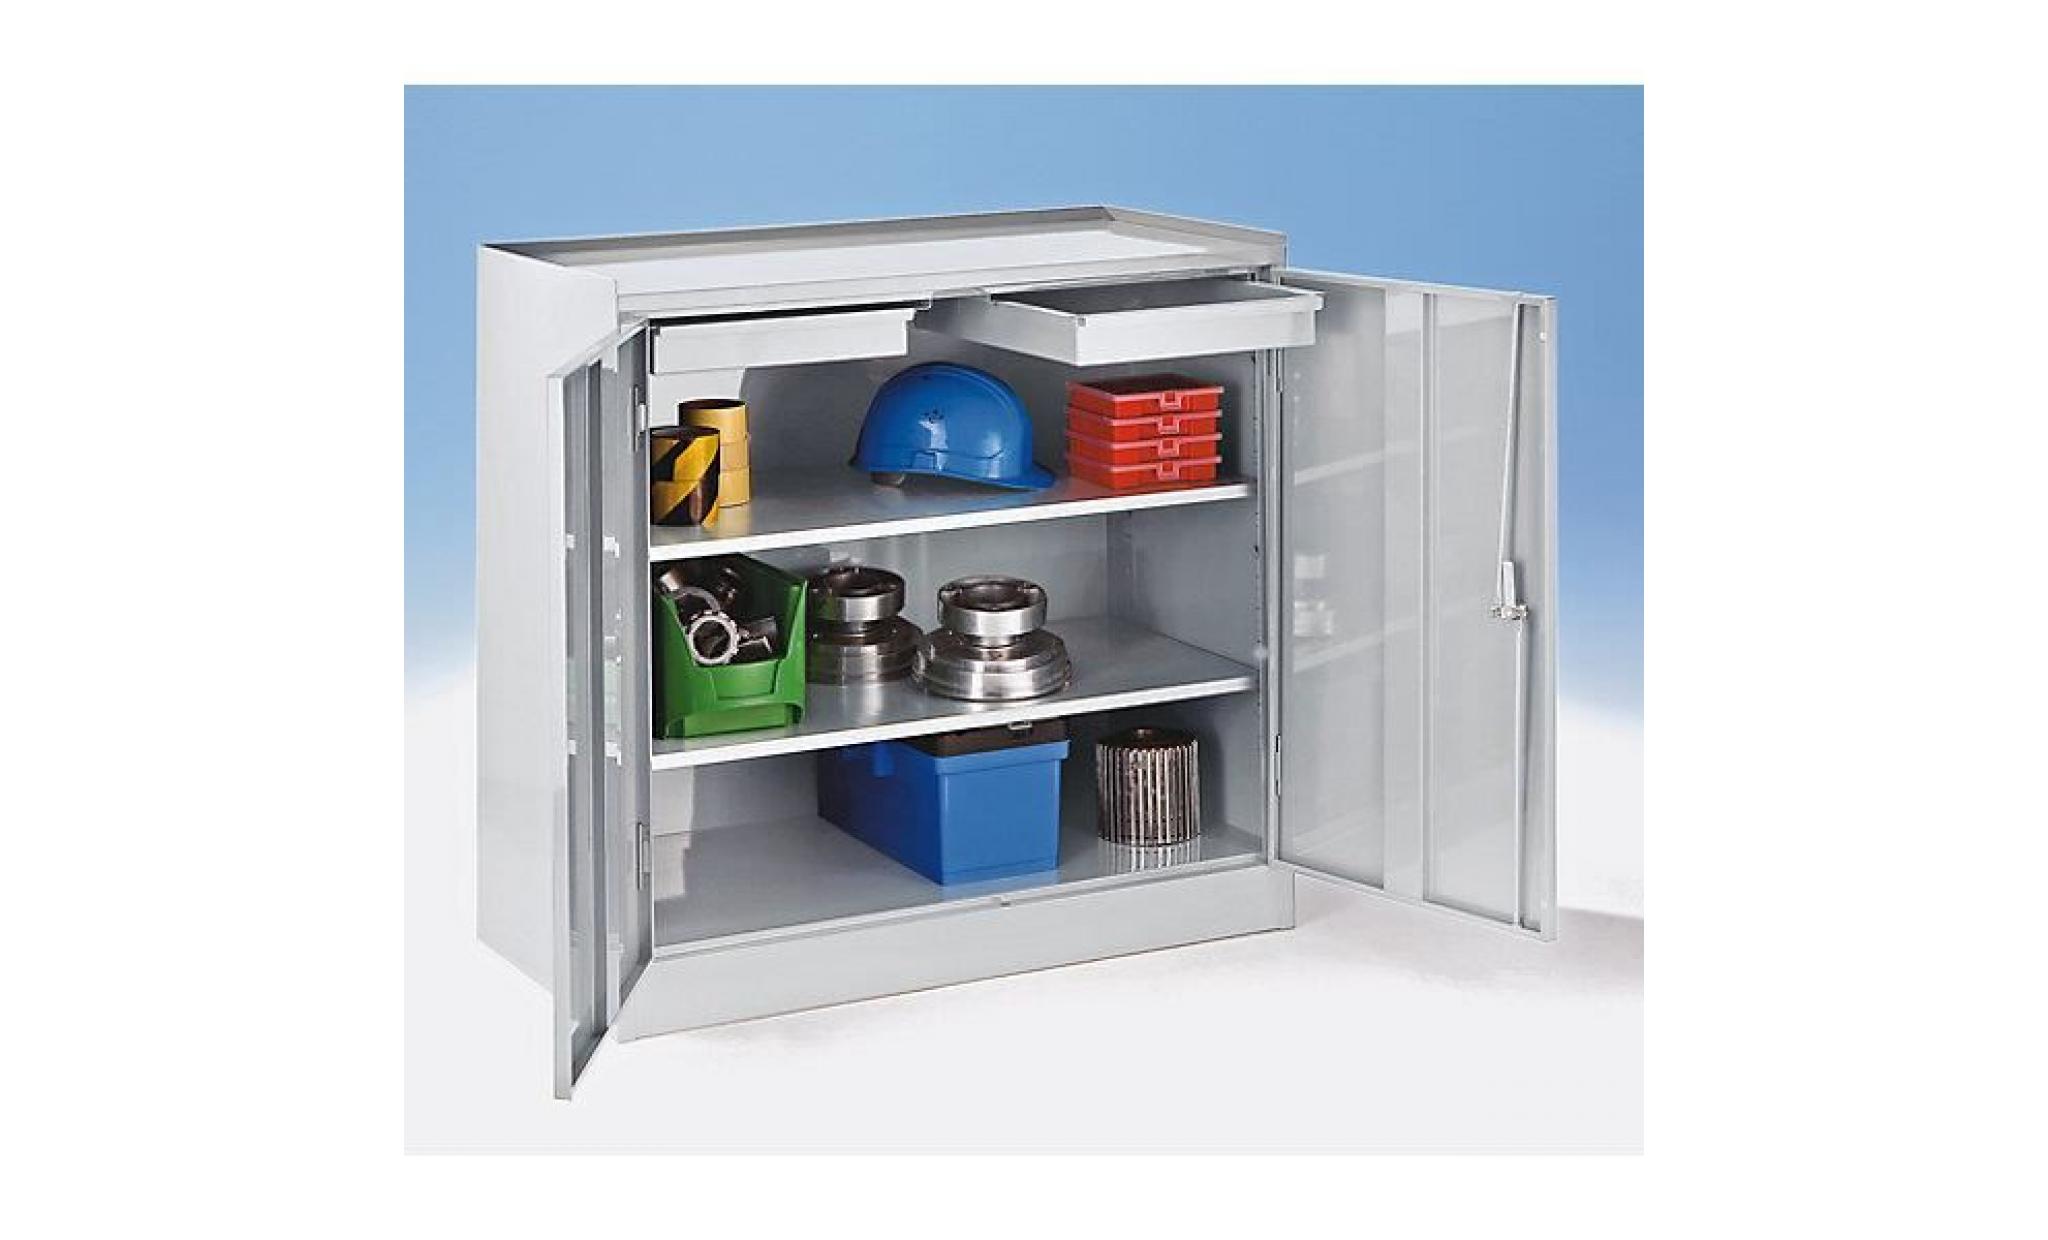 armoire à outils   2 tiroirs, 2 tablettes sur toute la largeur gris bleu ral 7031   armoire armoire à outils armoires armoires à